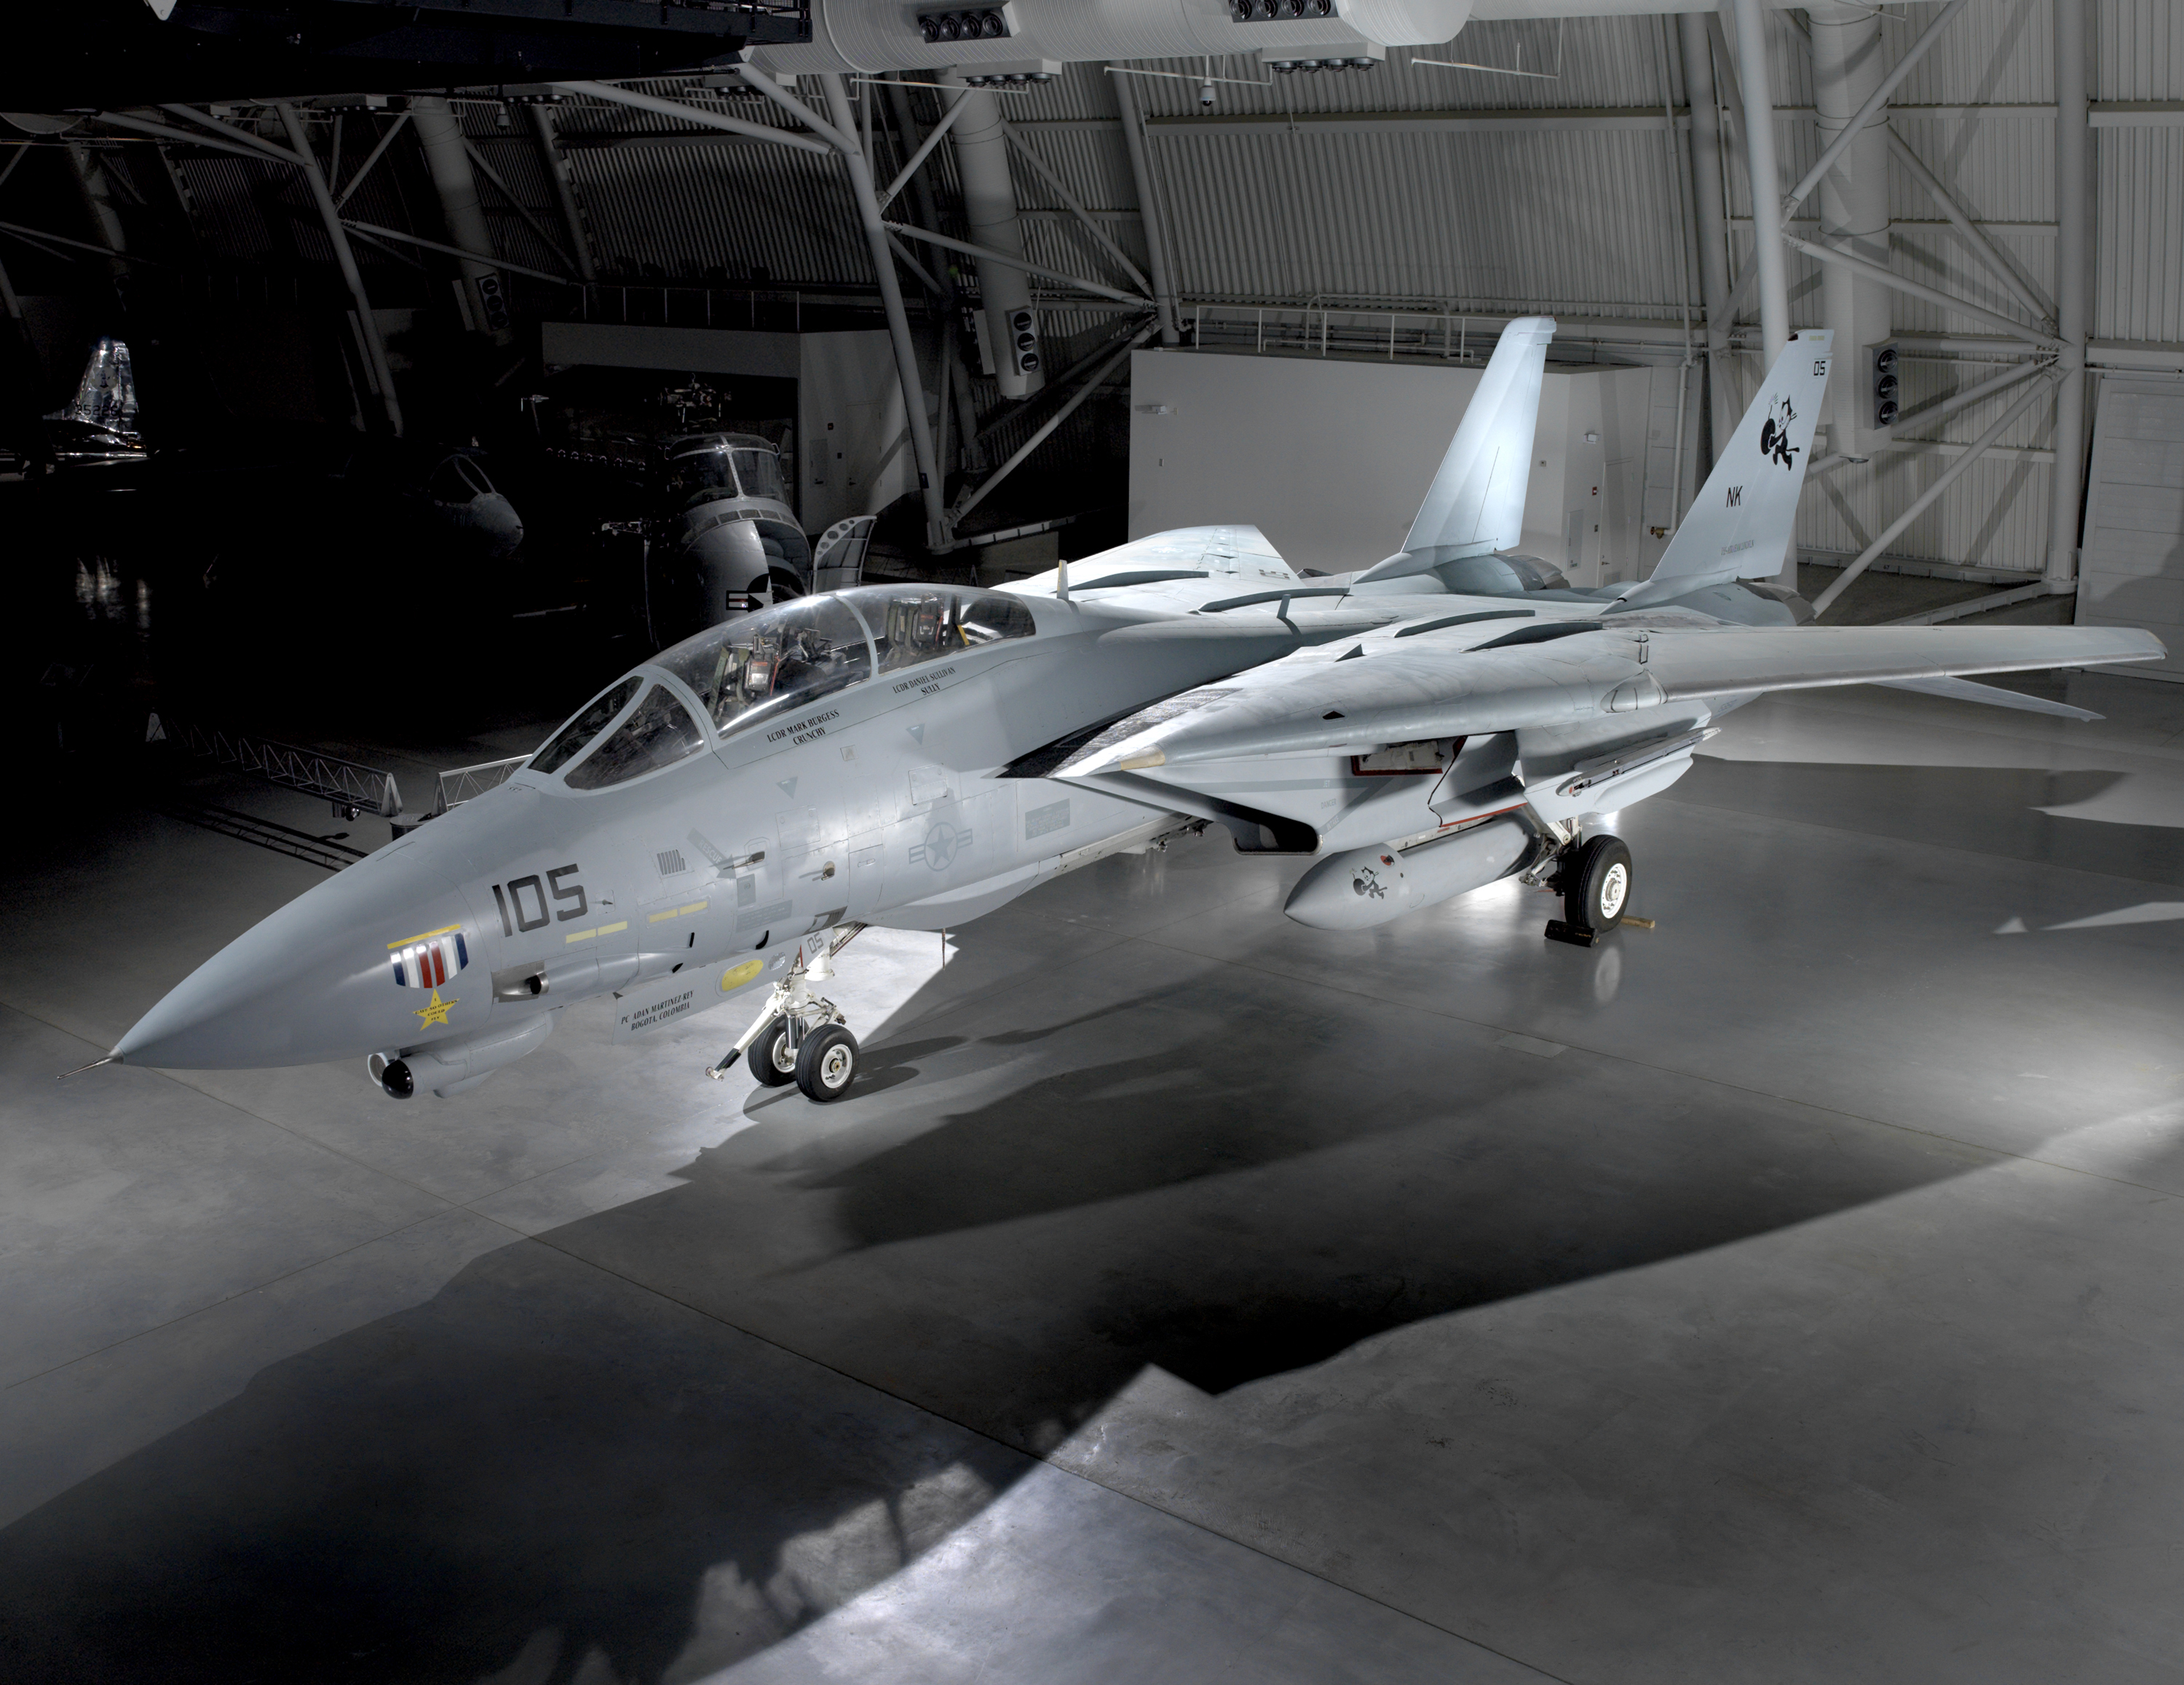 HQ Grumman F-14 Tomcat Wallpapers | File 3641.1Kb